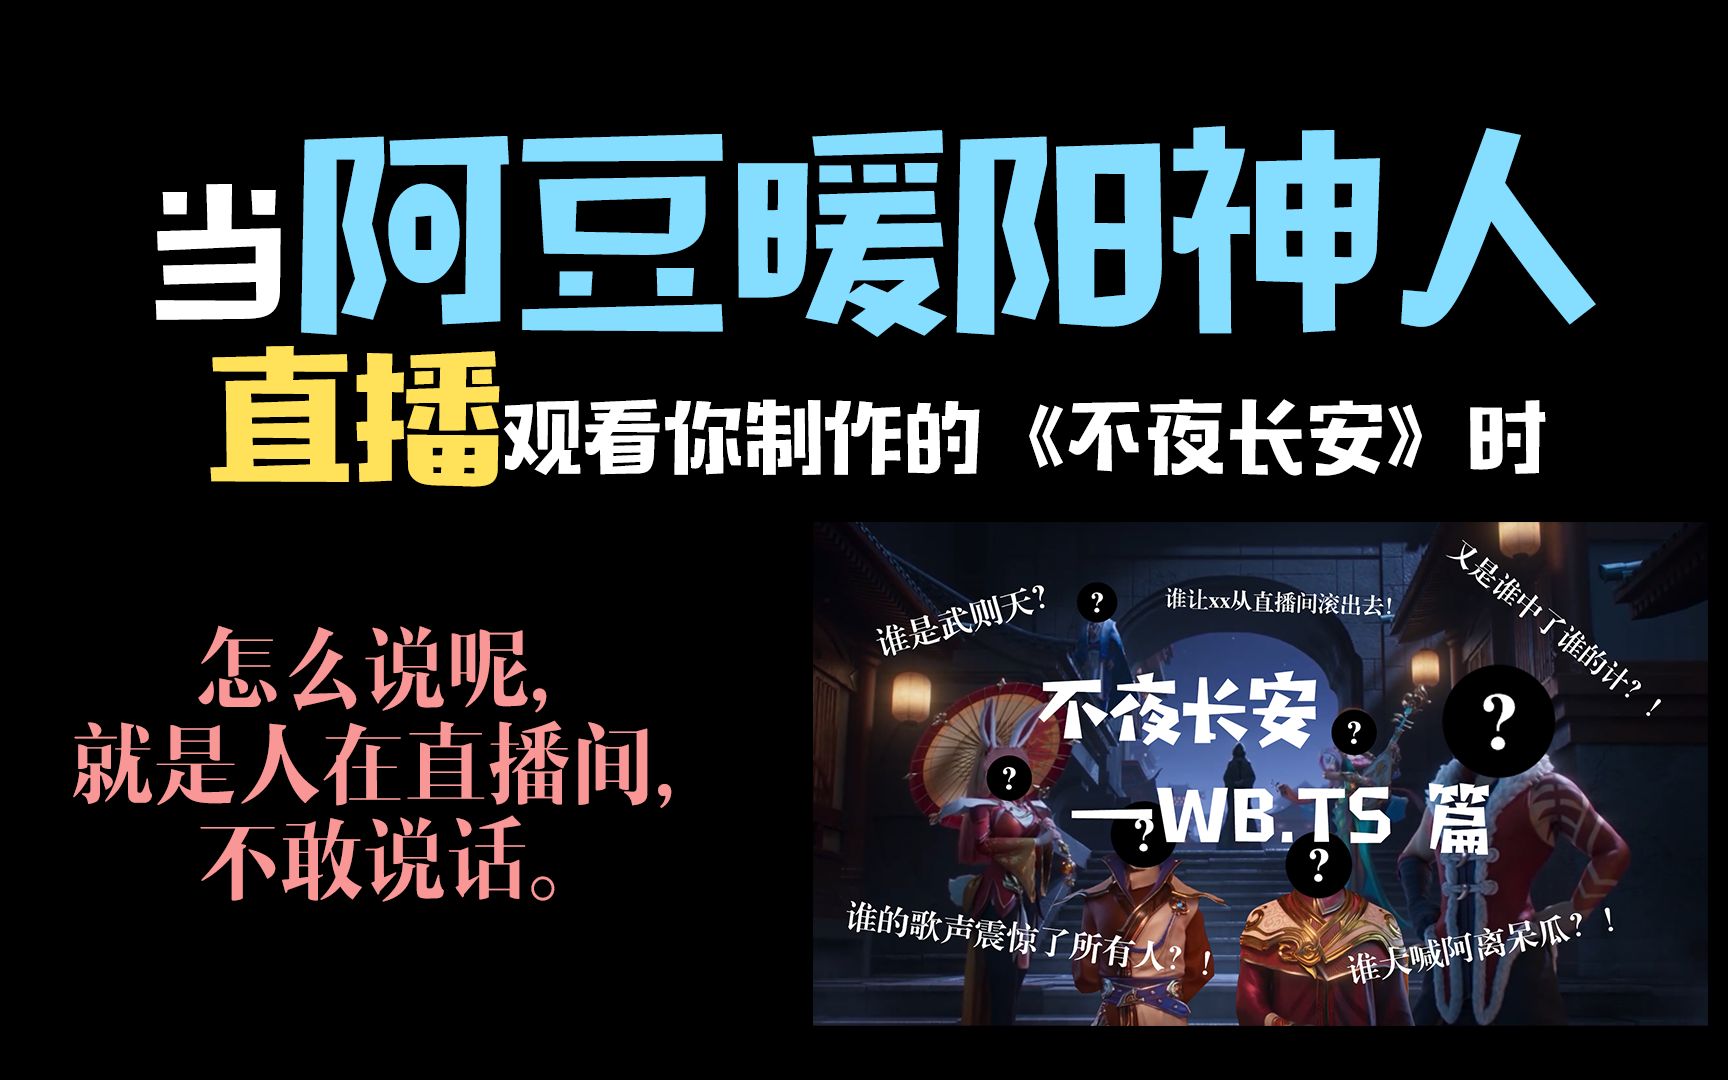 【北京WB】不夜长安直播reaction丨当阿豆神人暖阳直播观看自己的视频时，他们会说些什么？